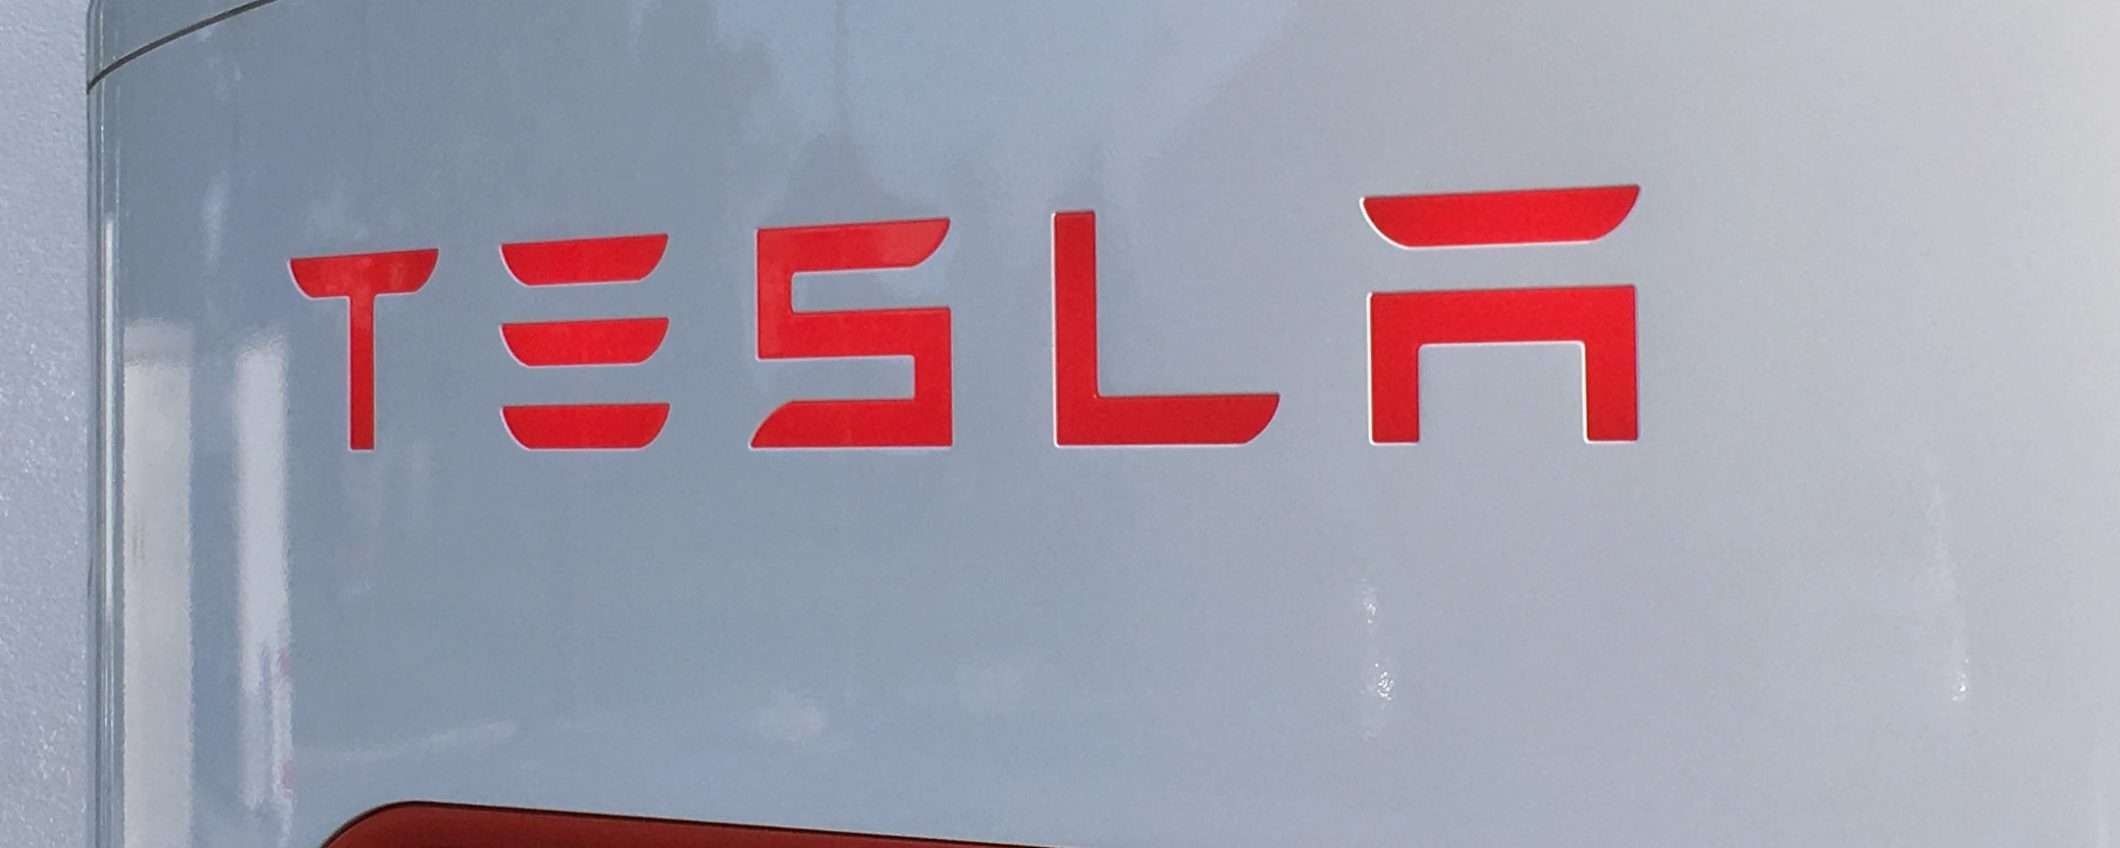 Il SUV elettrico Tesla Model Y arriverà nel 2020